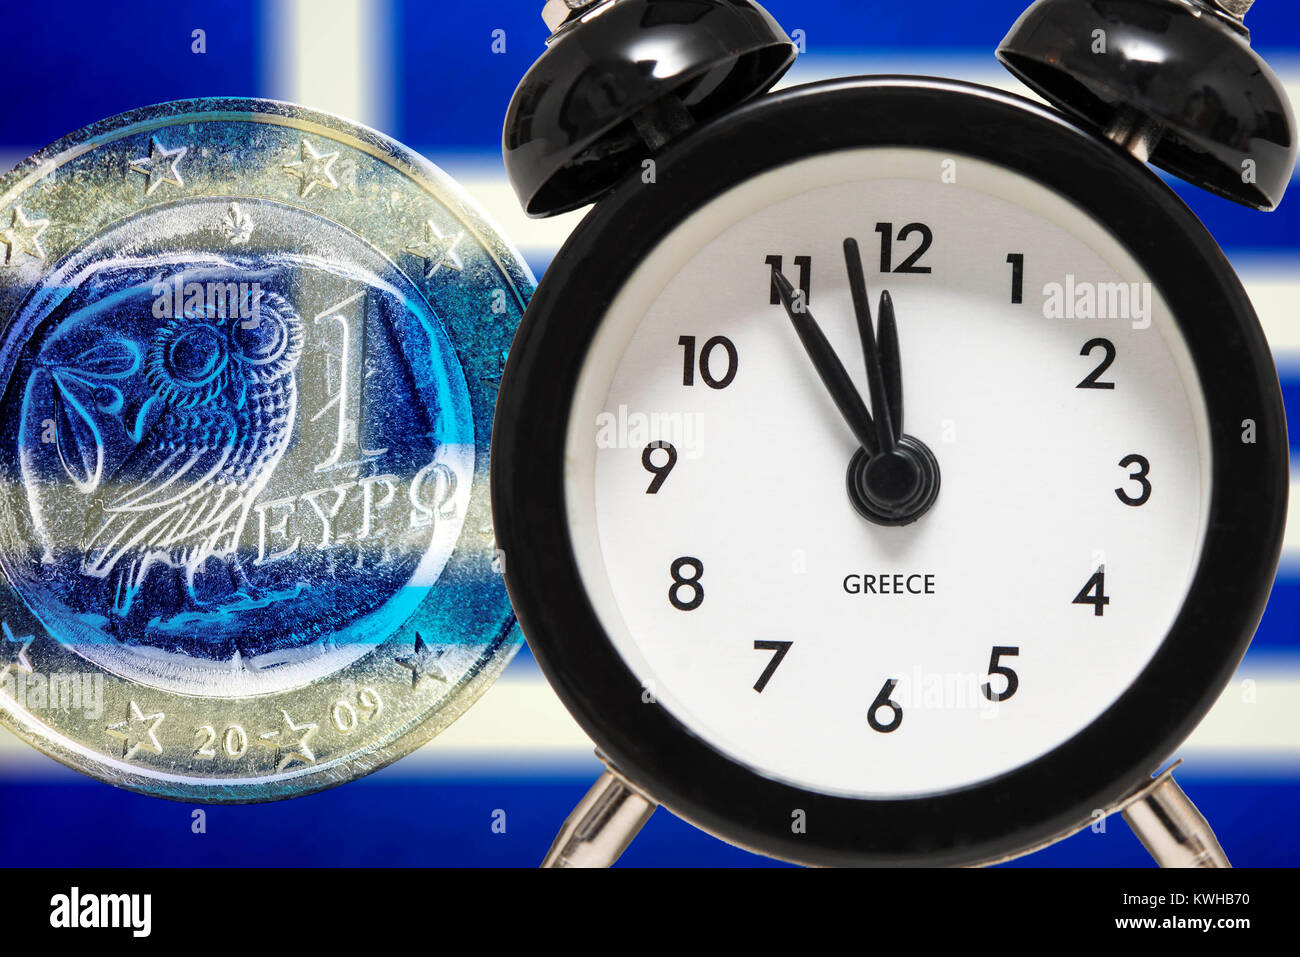 Alarm clock on Five before Twelve before Greek flag and euro, symbolic photo debt quarrel, Wecker auf FÃ¼nf vor ZwÃ¶lf vor griechischer Fahne und Euro Stock Photo